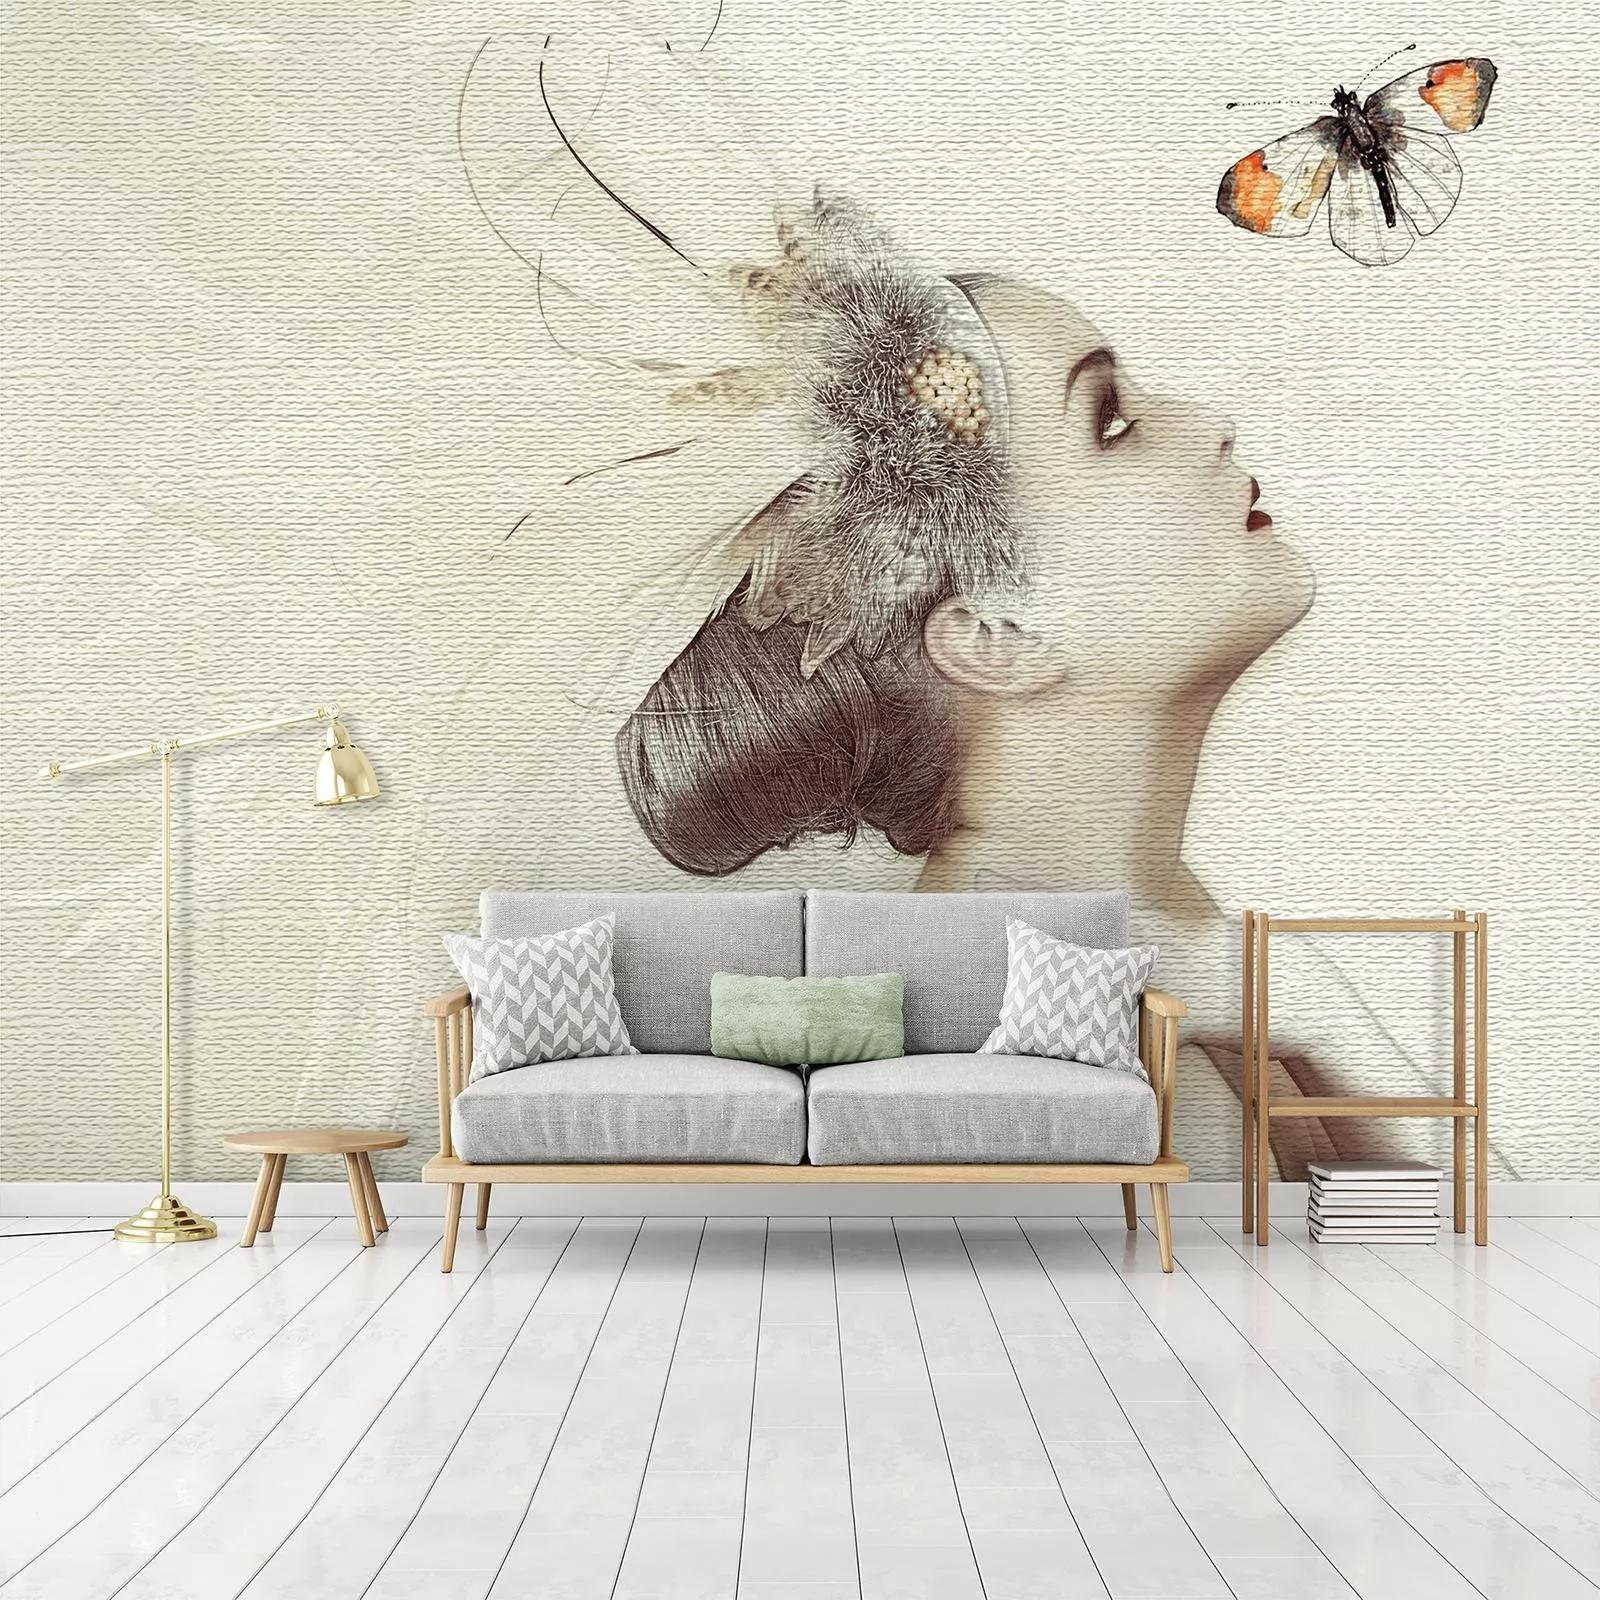 Fali poszter művészi stílusban női arc és pillangó mintával 368x254 vlies